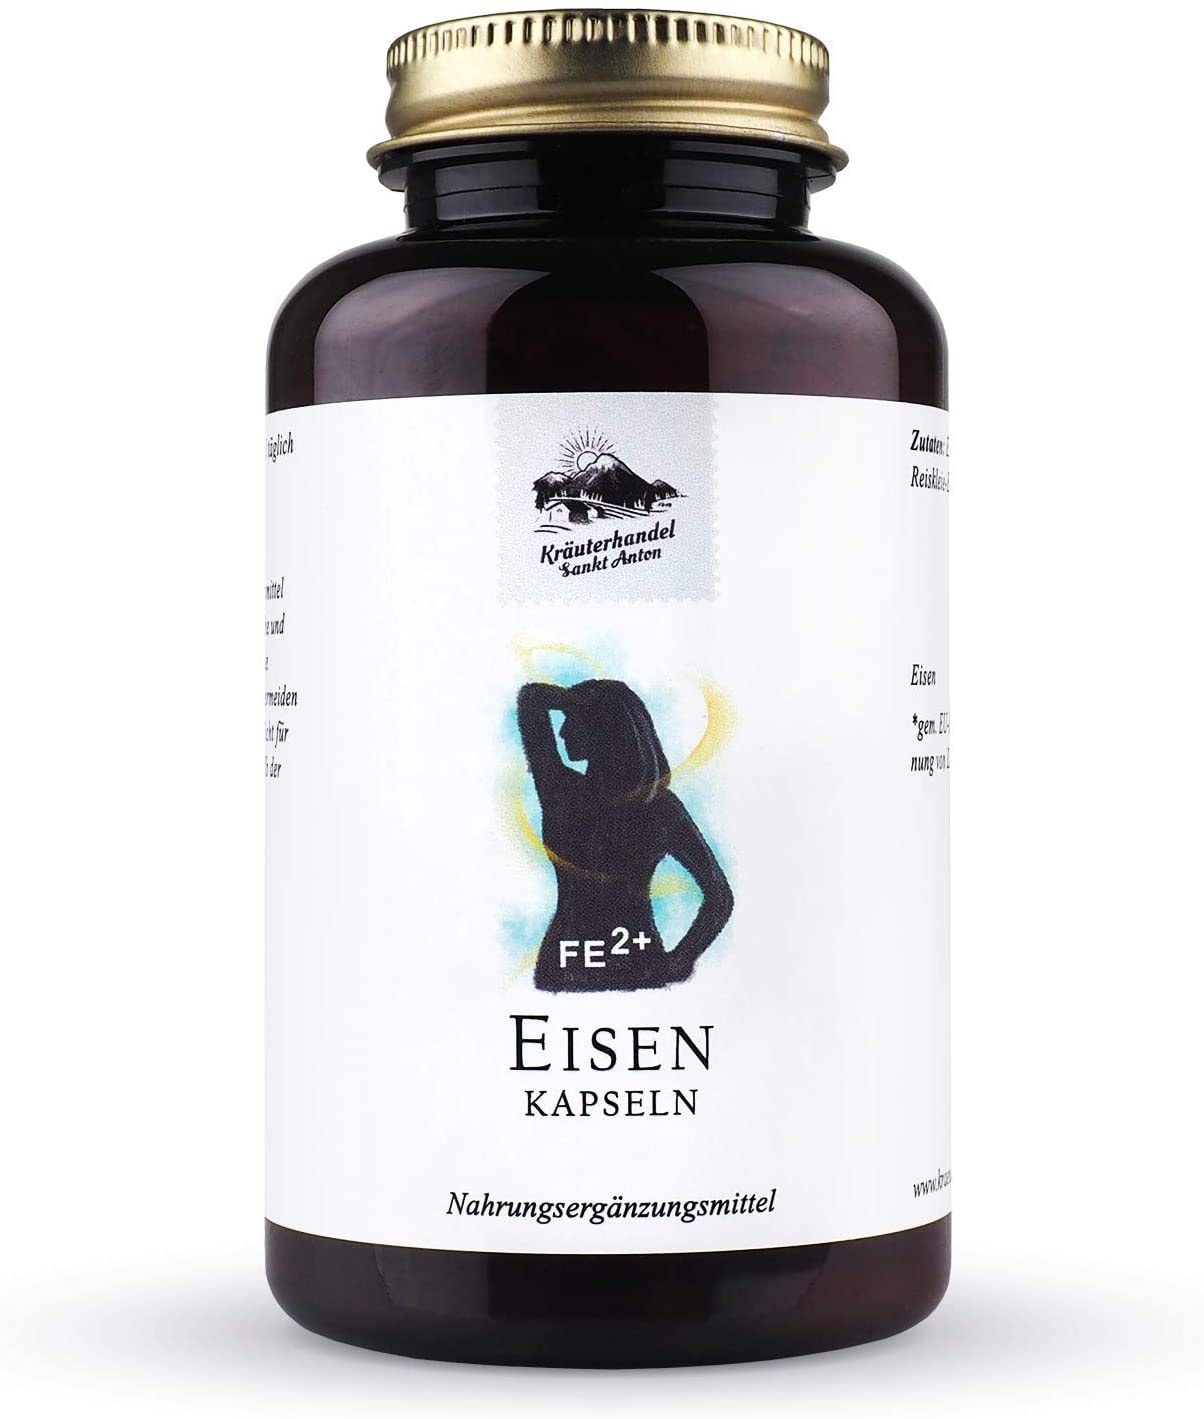 KRÄUTERHANDEL SANKT ANTON® - Eisen - 20 mg Eisen - Hochdosiert - Laborgeprüft - Deutsche Premium Qualität (180 Kapseln)…